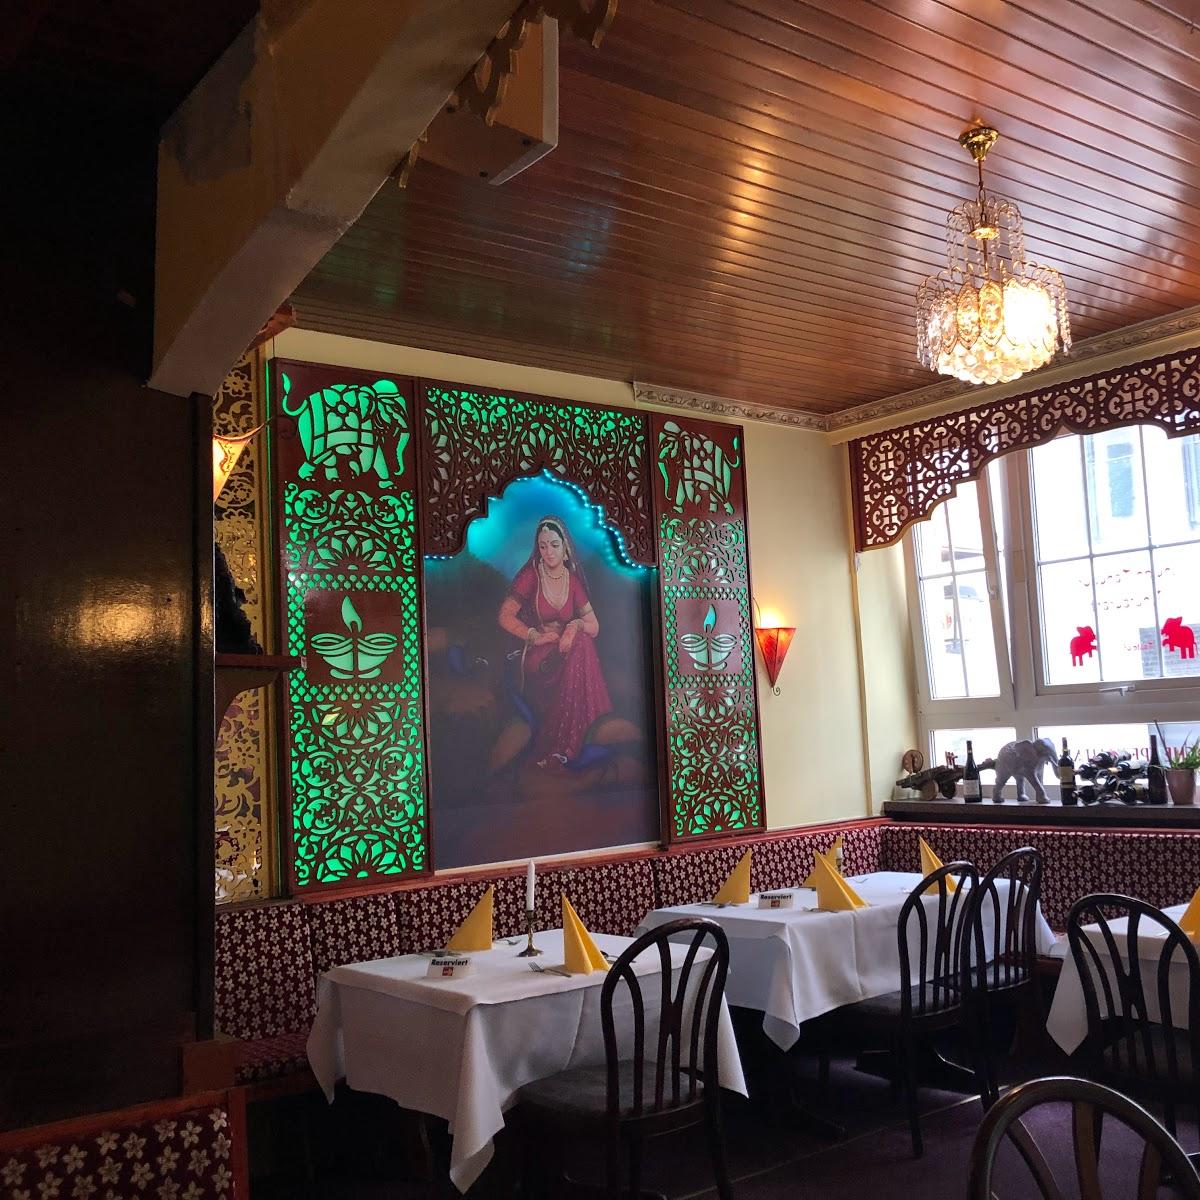 Restaurant "Gaststätte Indien Tandoori Inh. Kuldip" in Landau in der Pfalz